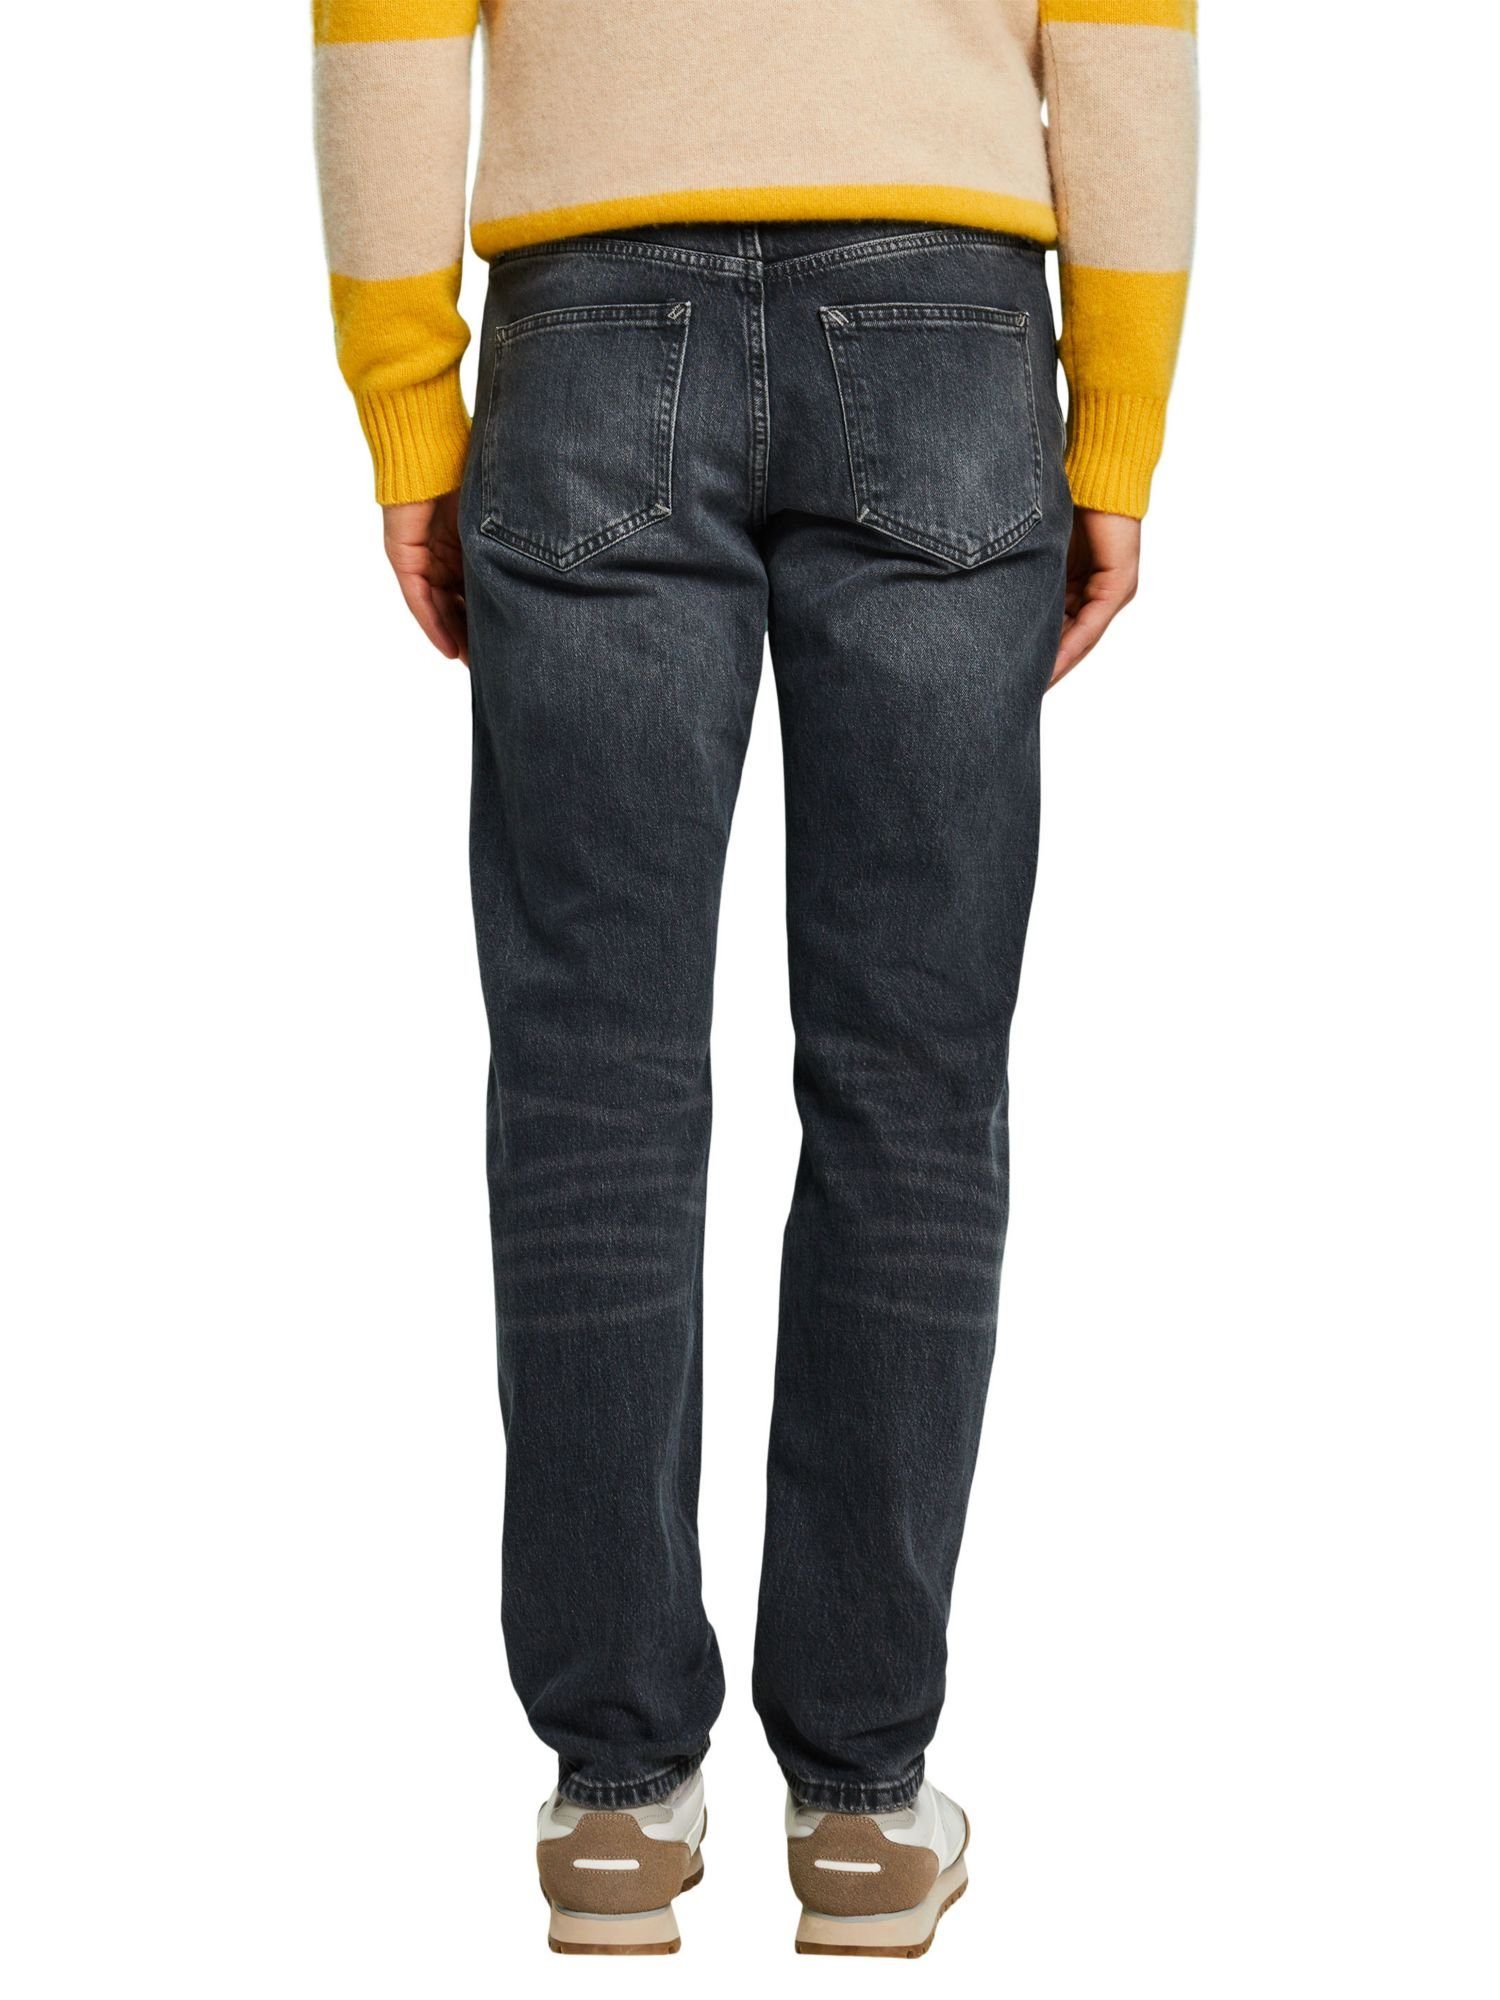 Passform Retro-Jeans Straight-Jeans mit gerader Esprit